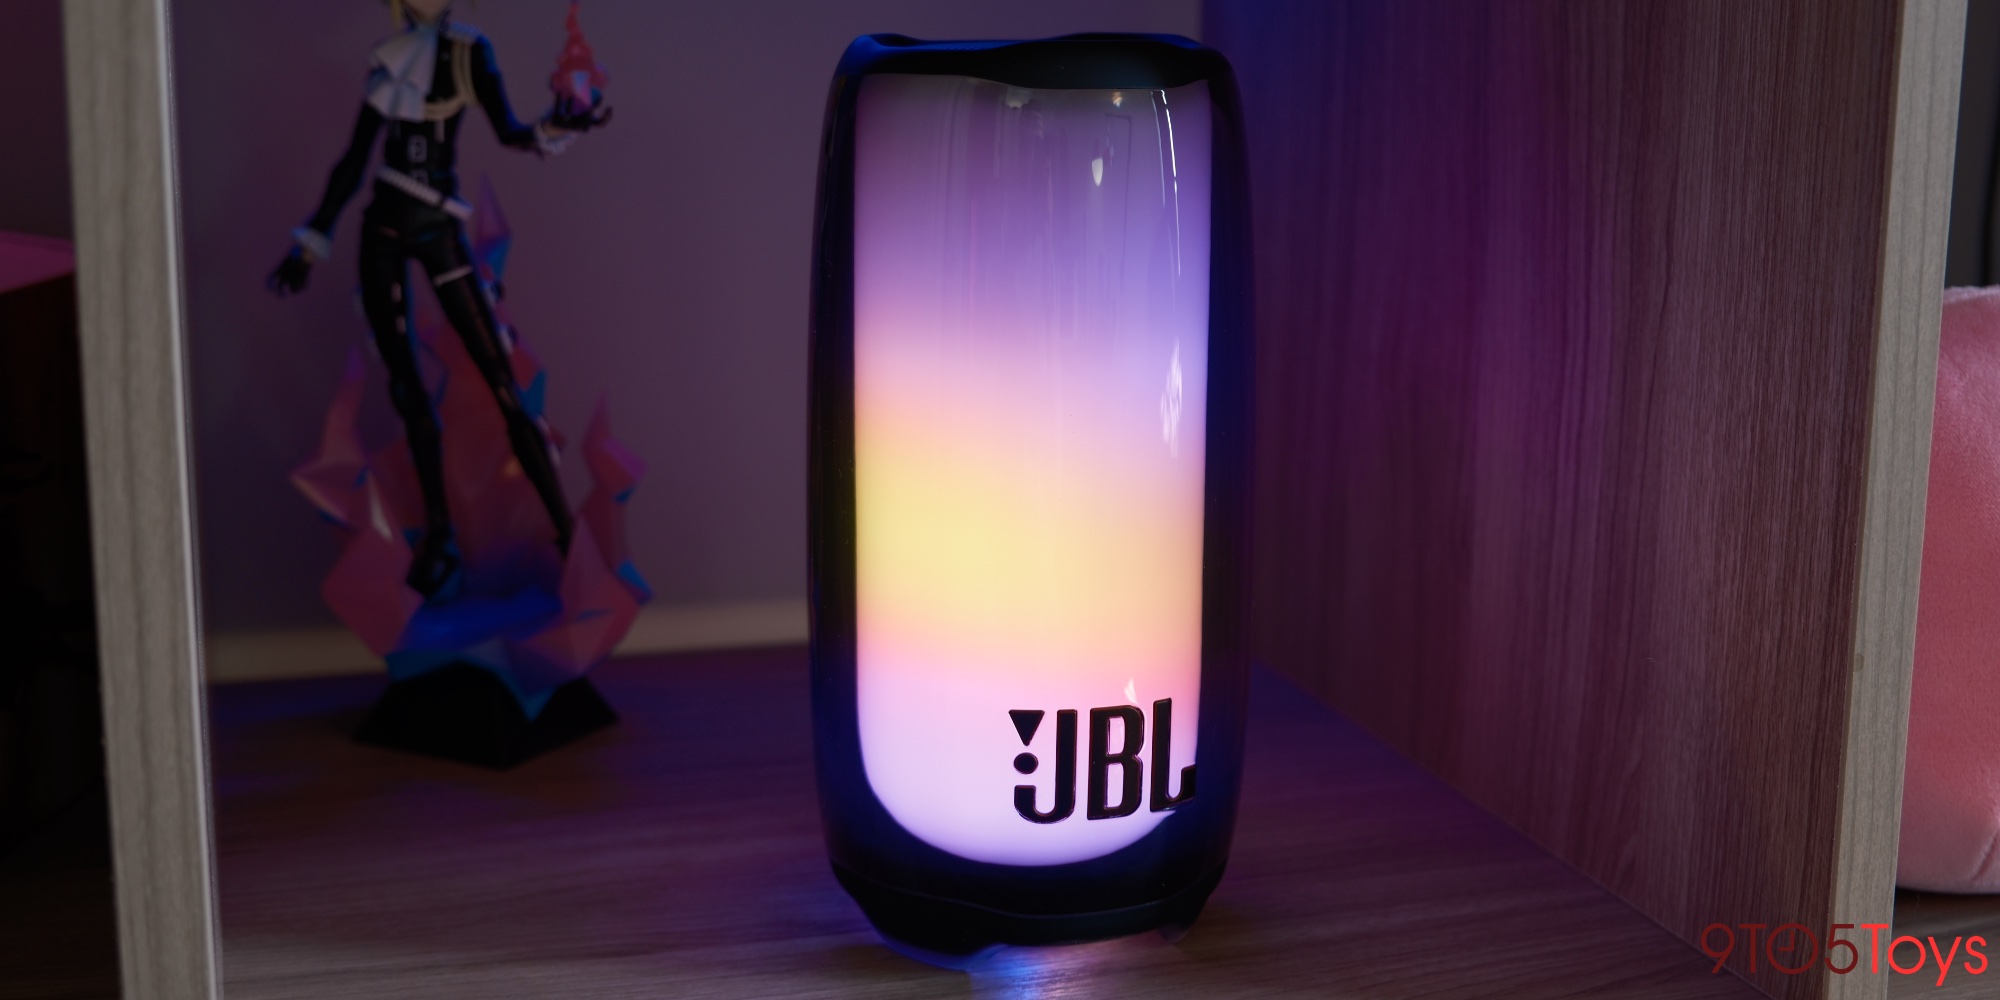 JBL Pulse 5 speaker arrives with LED